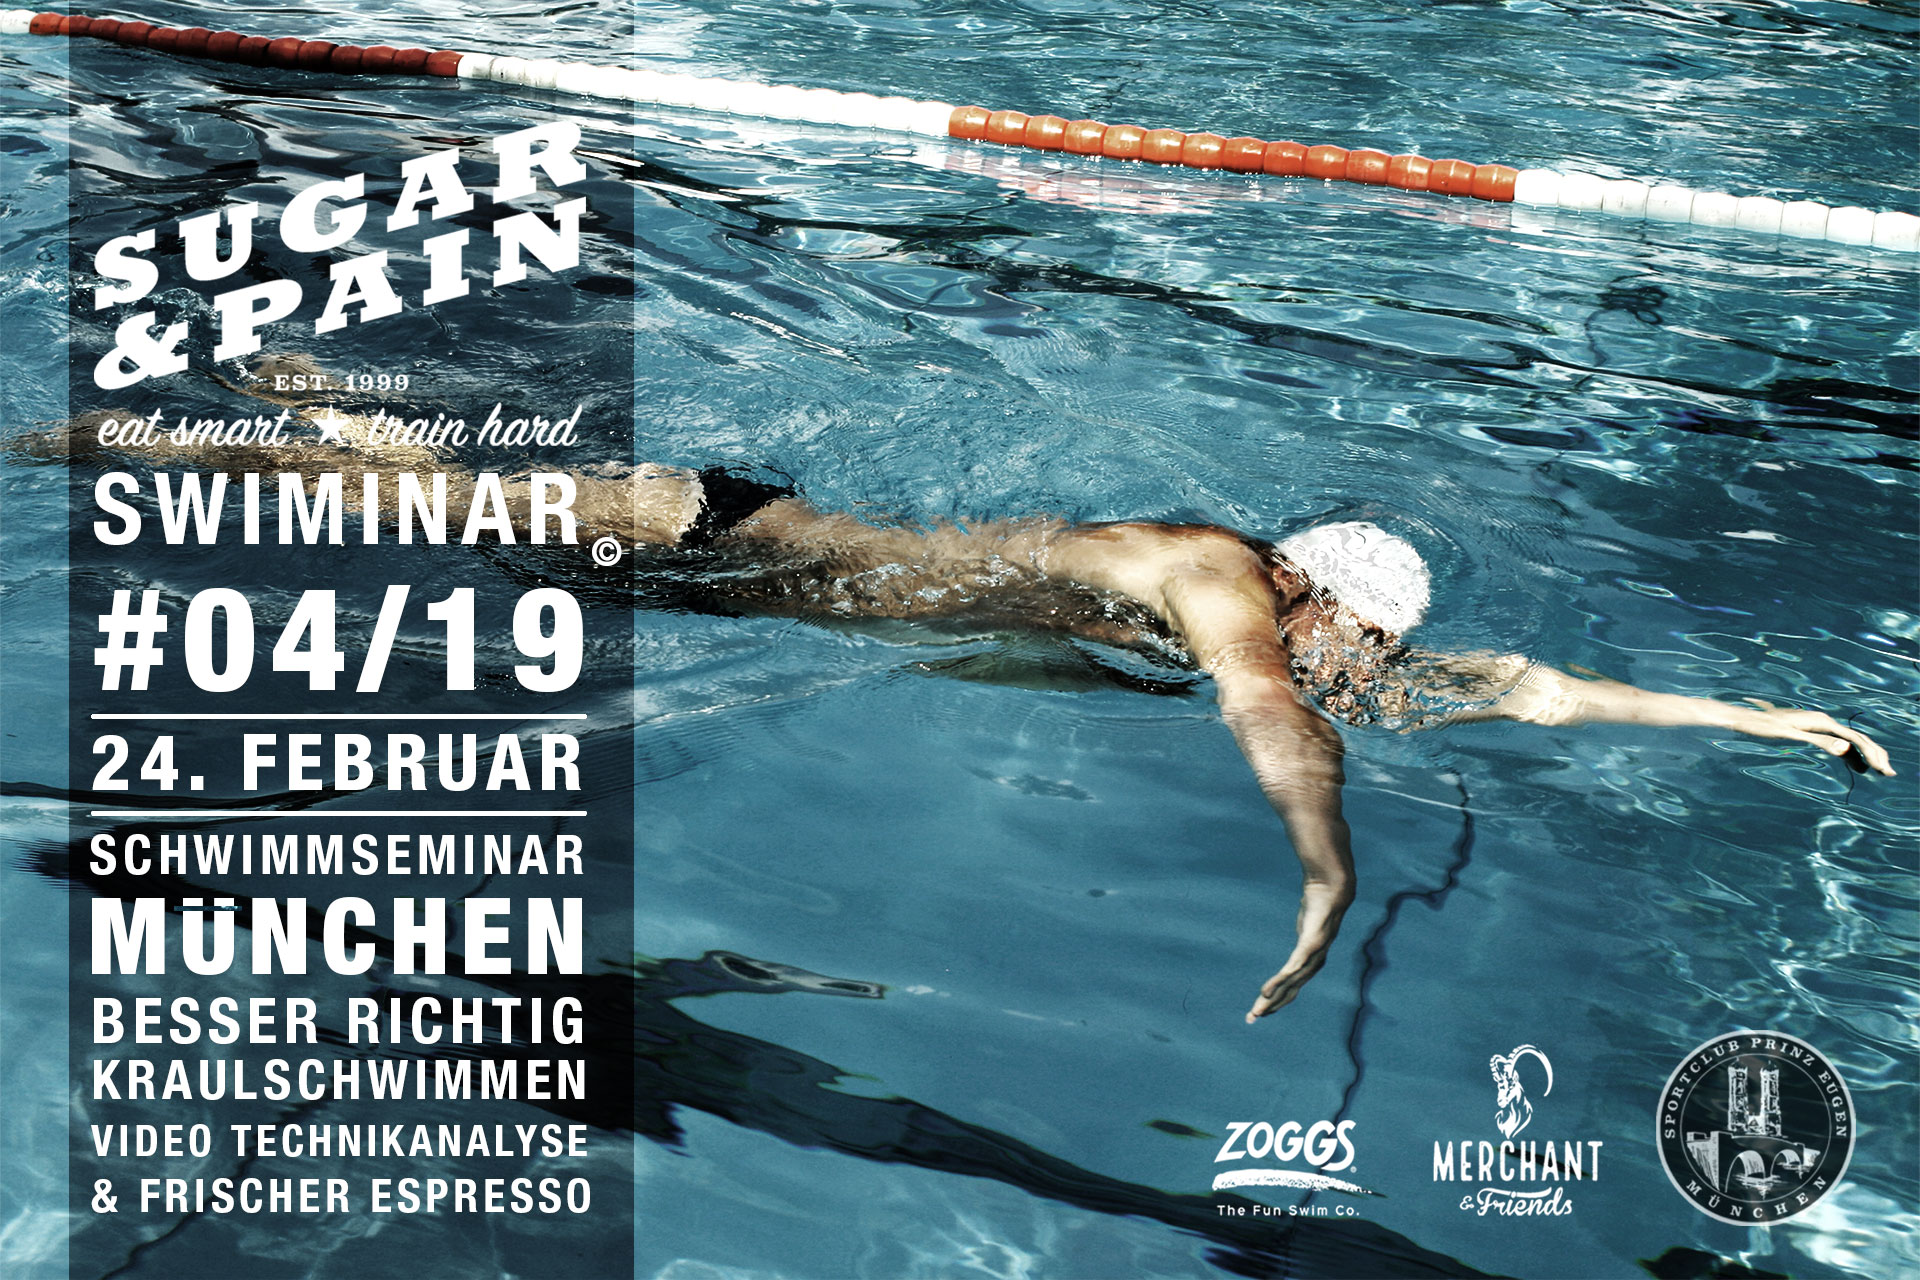 SUGAR & PAIN SWIMINAR #04/19 Starter – Das Schwimmseminar mit Videoanalyse für richtige Kraultechnik - Flyer